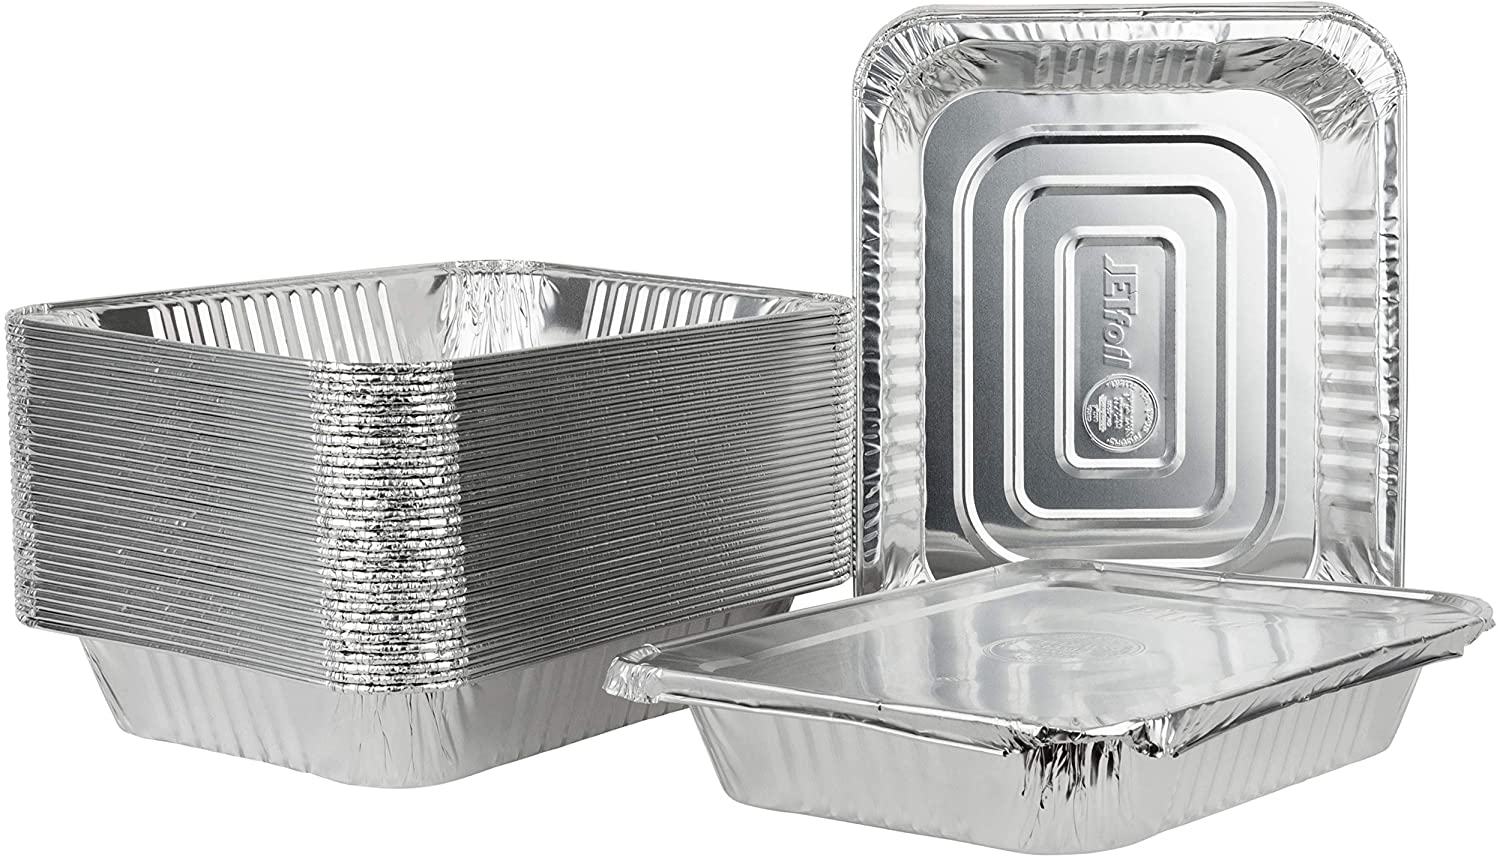 Aluminum Pans 9x13 Disposable Foil Pans (10 Pack) - Half Size